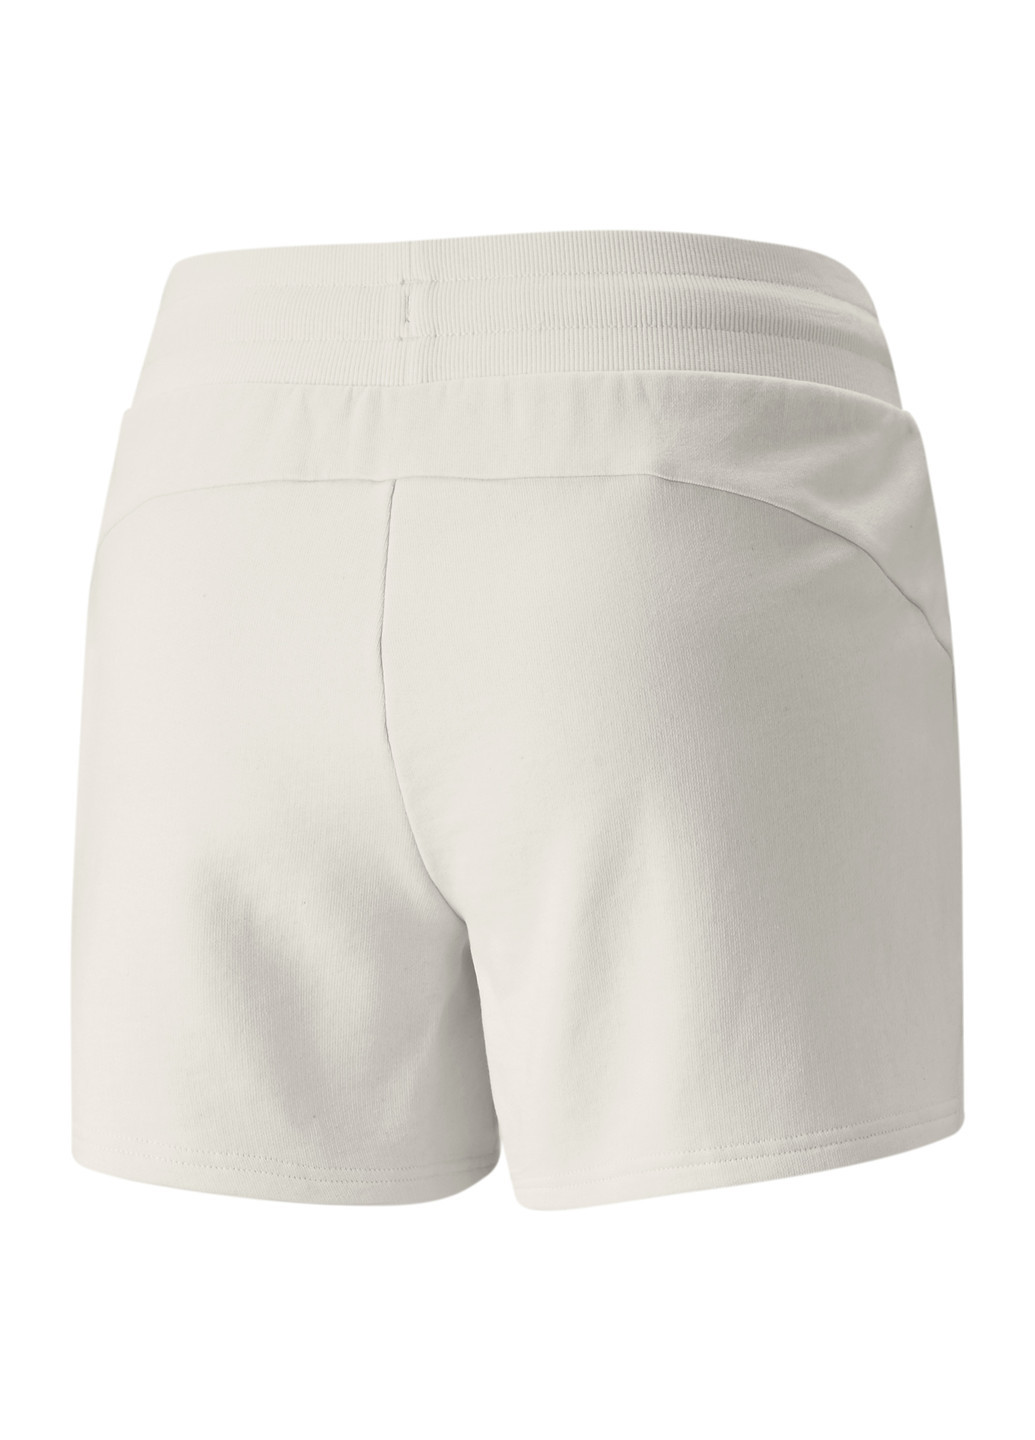 Шорты Better Women's Shorts Puma однотонные комбинированные спортивные хлопок, эластан